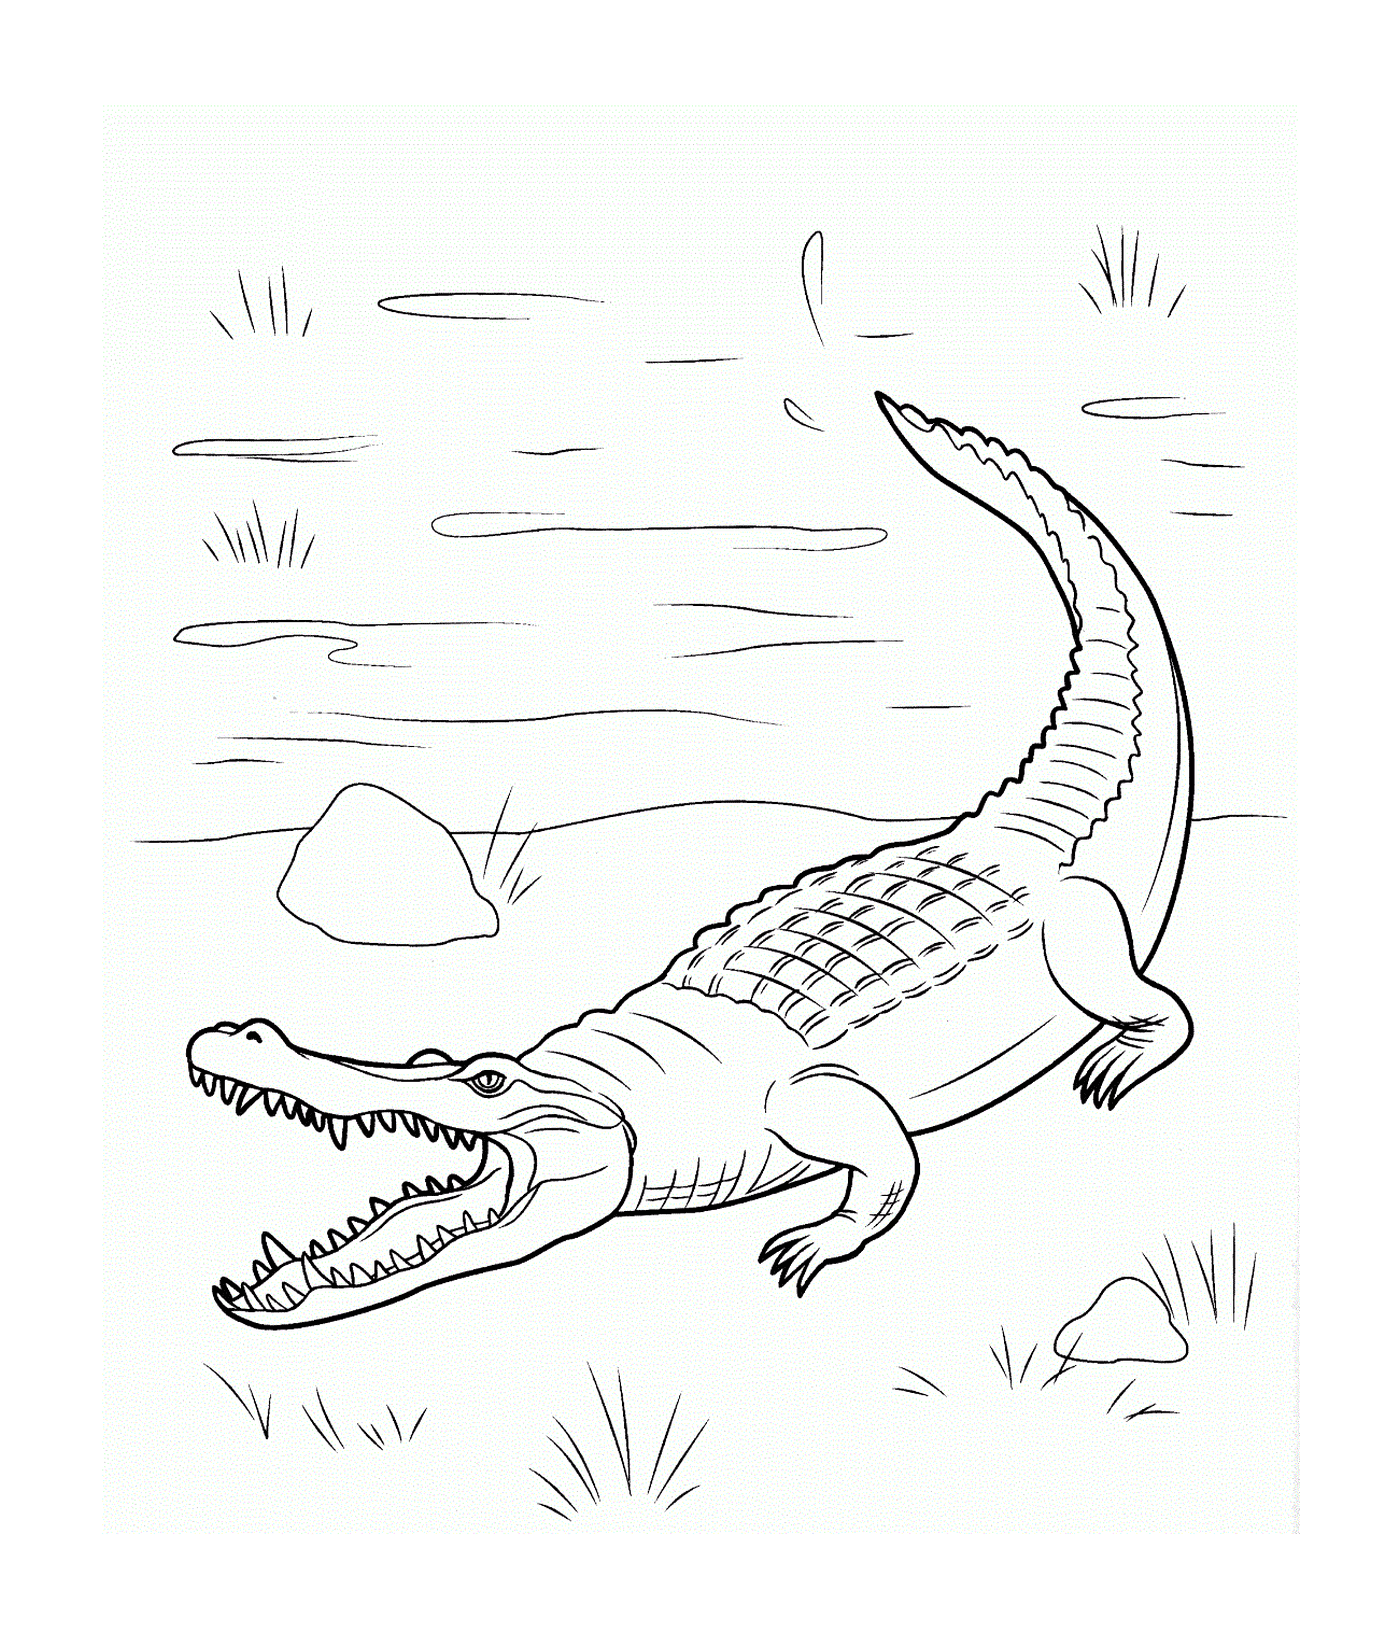  Un cocodrilo marino de la familia Crocodylidae, nadando en el agua 